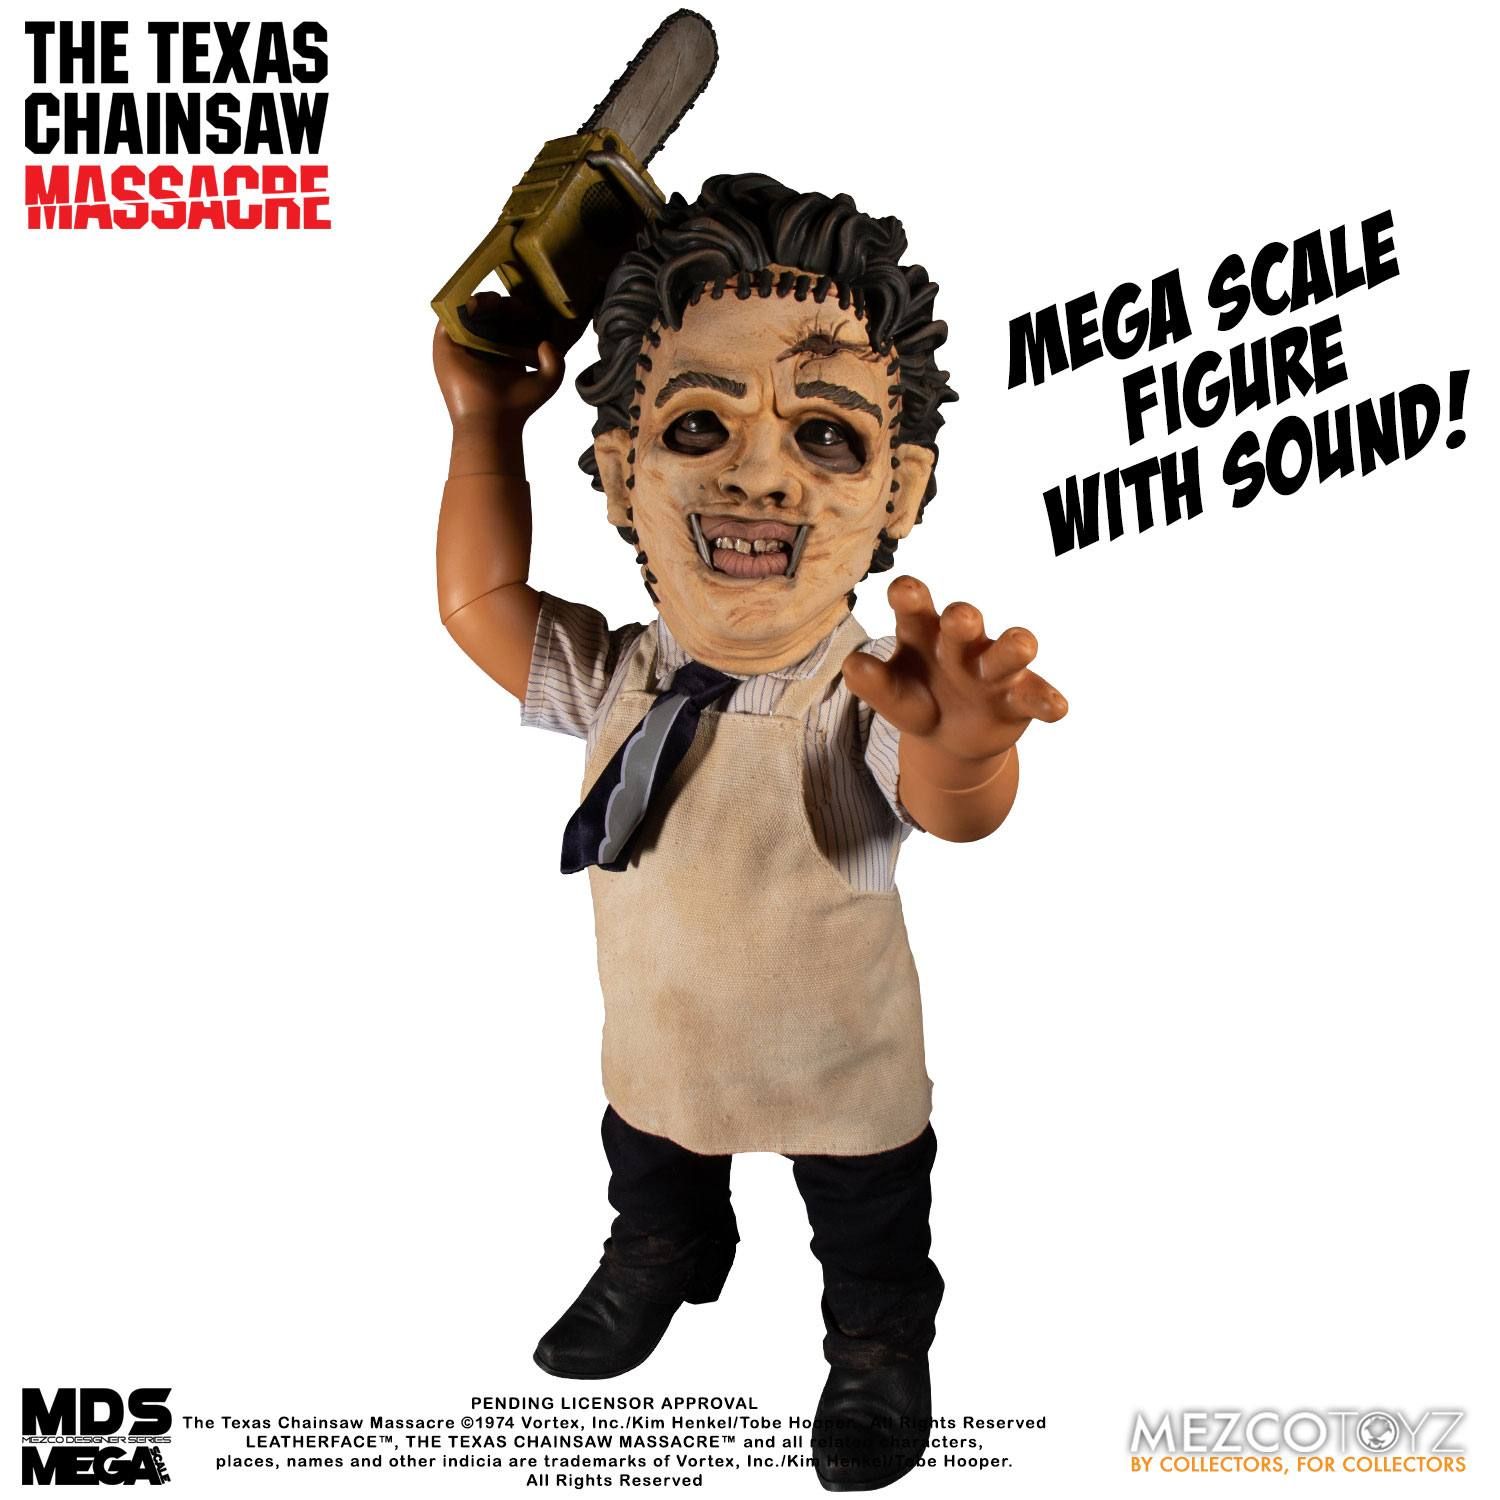 Texas Chainsaw Massacre Mega Scale Akční Figure with Sound Feature Leatherface 38 cm Mezco Toys